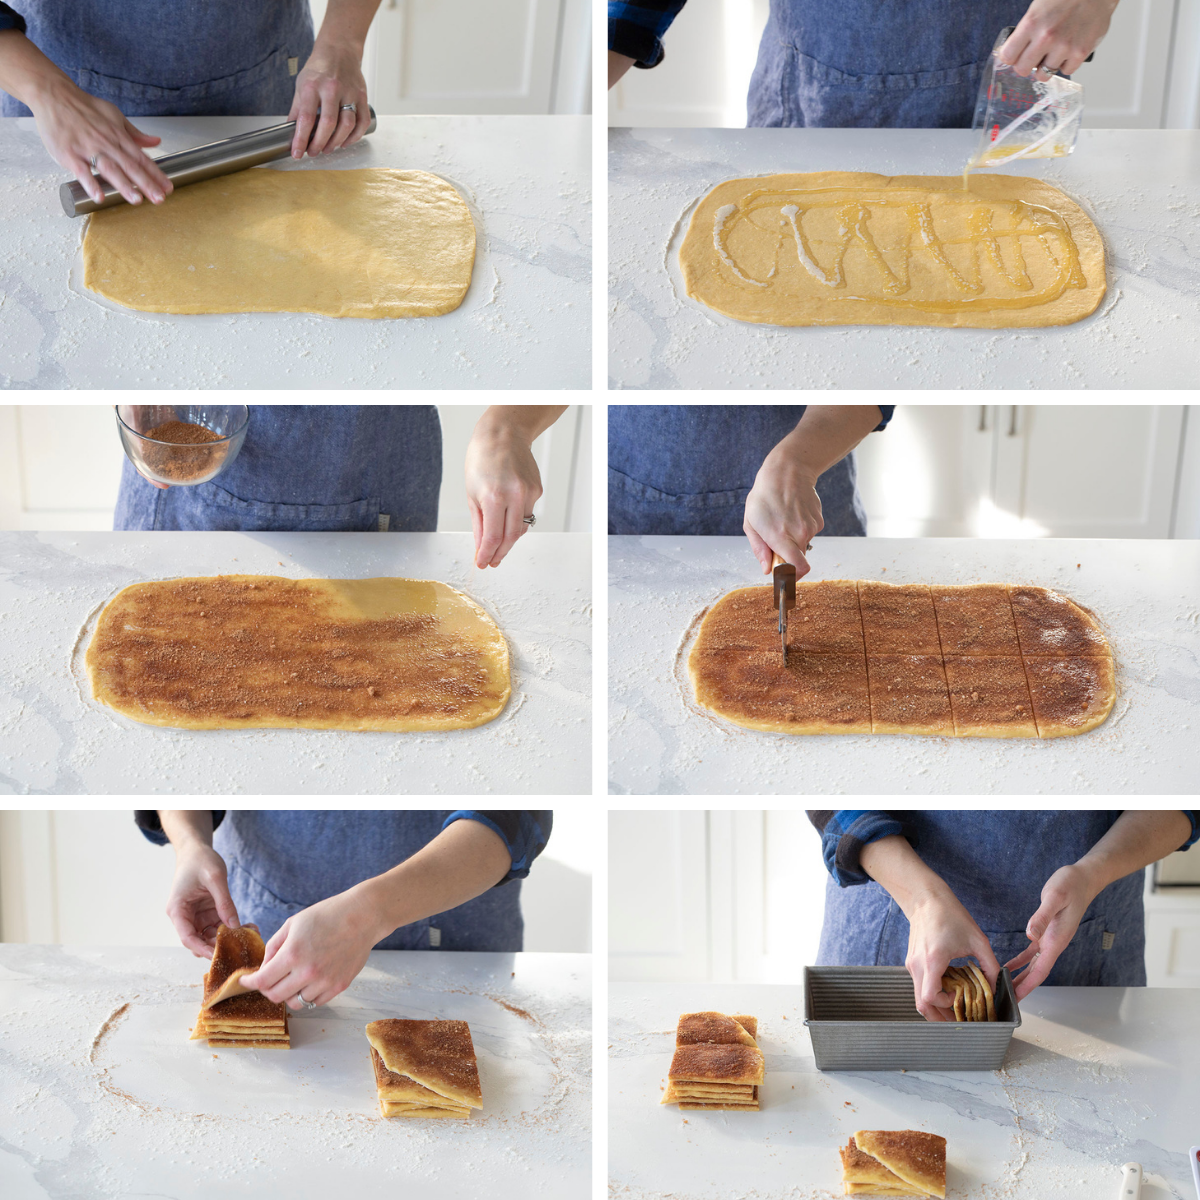 肉桂卷拉链面包的工艺步骤